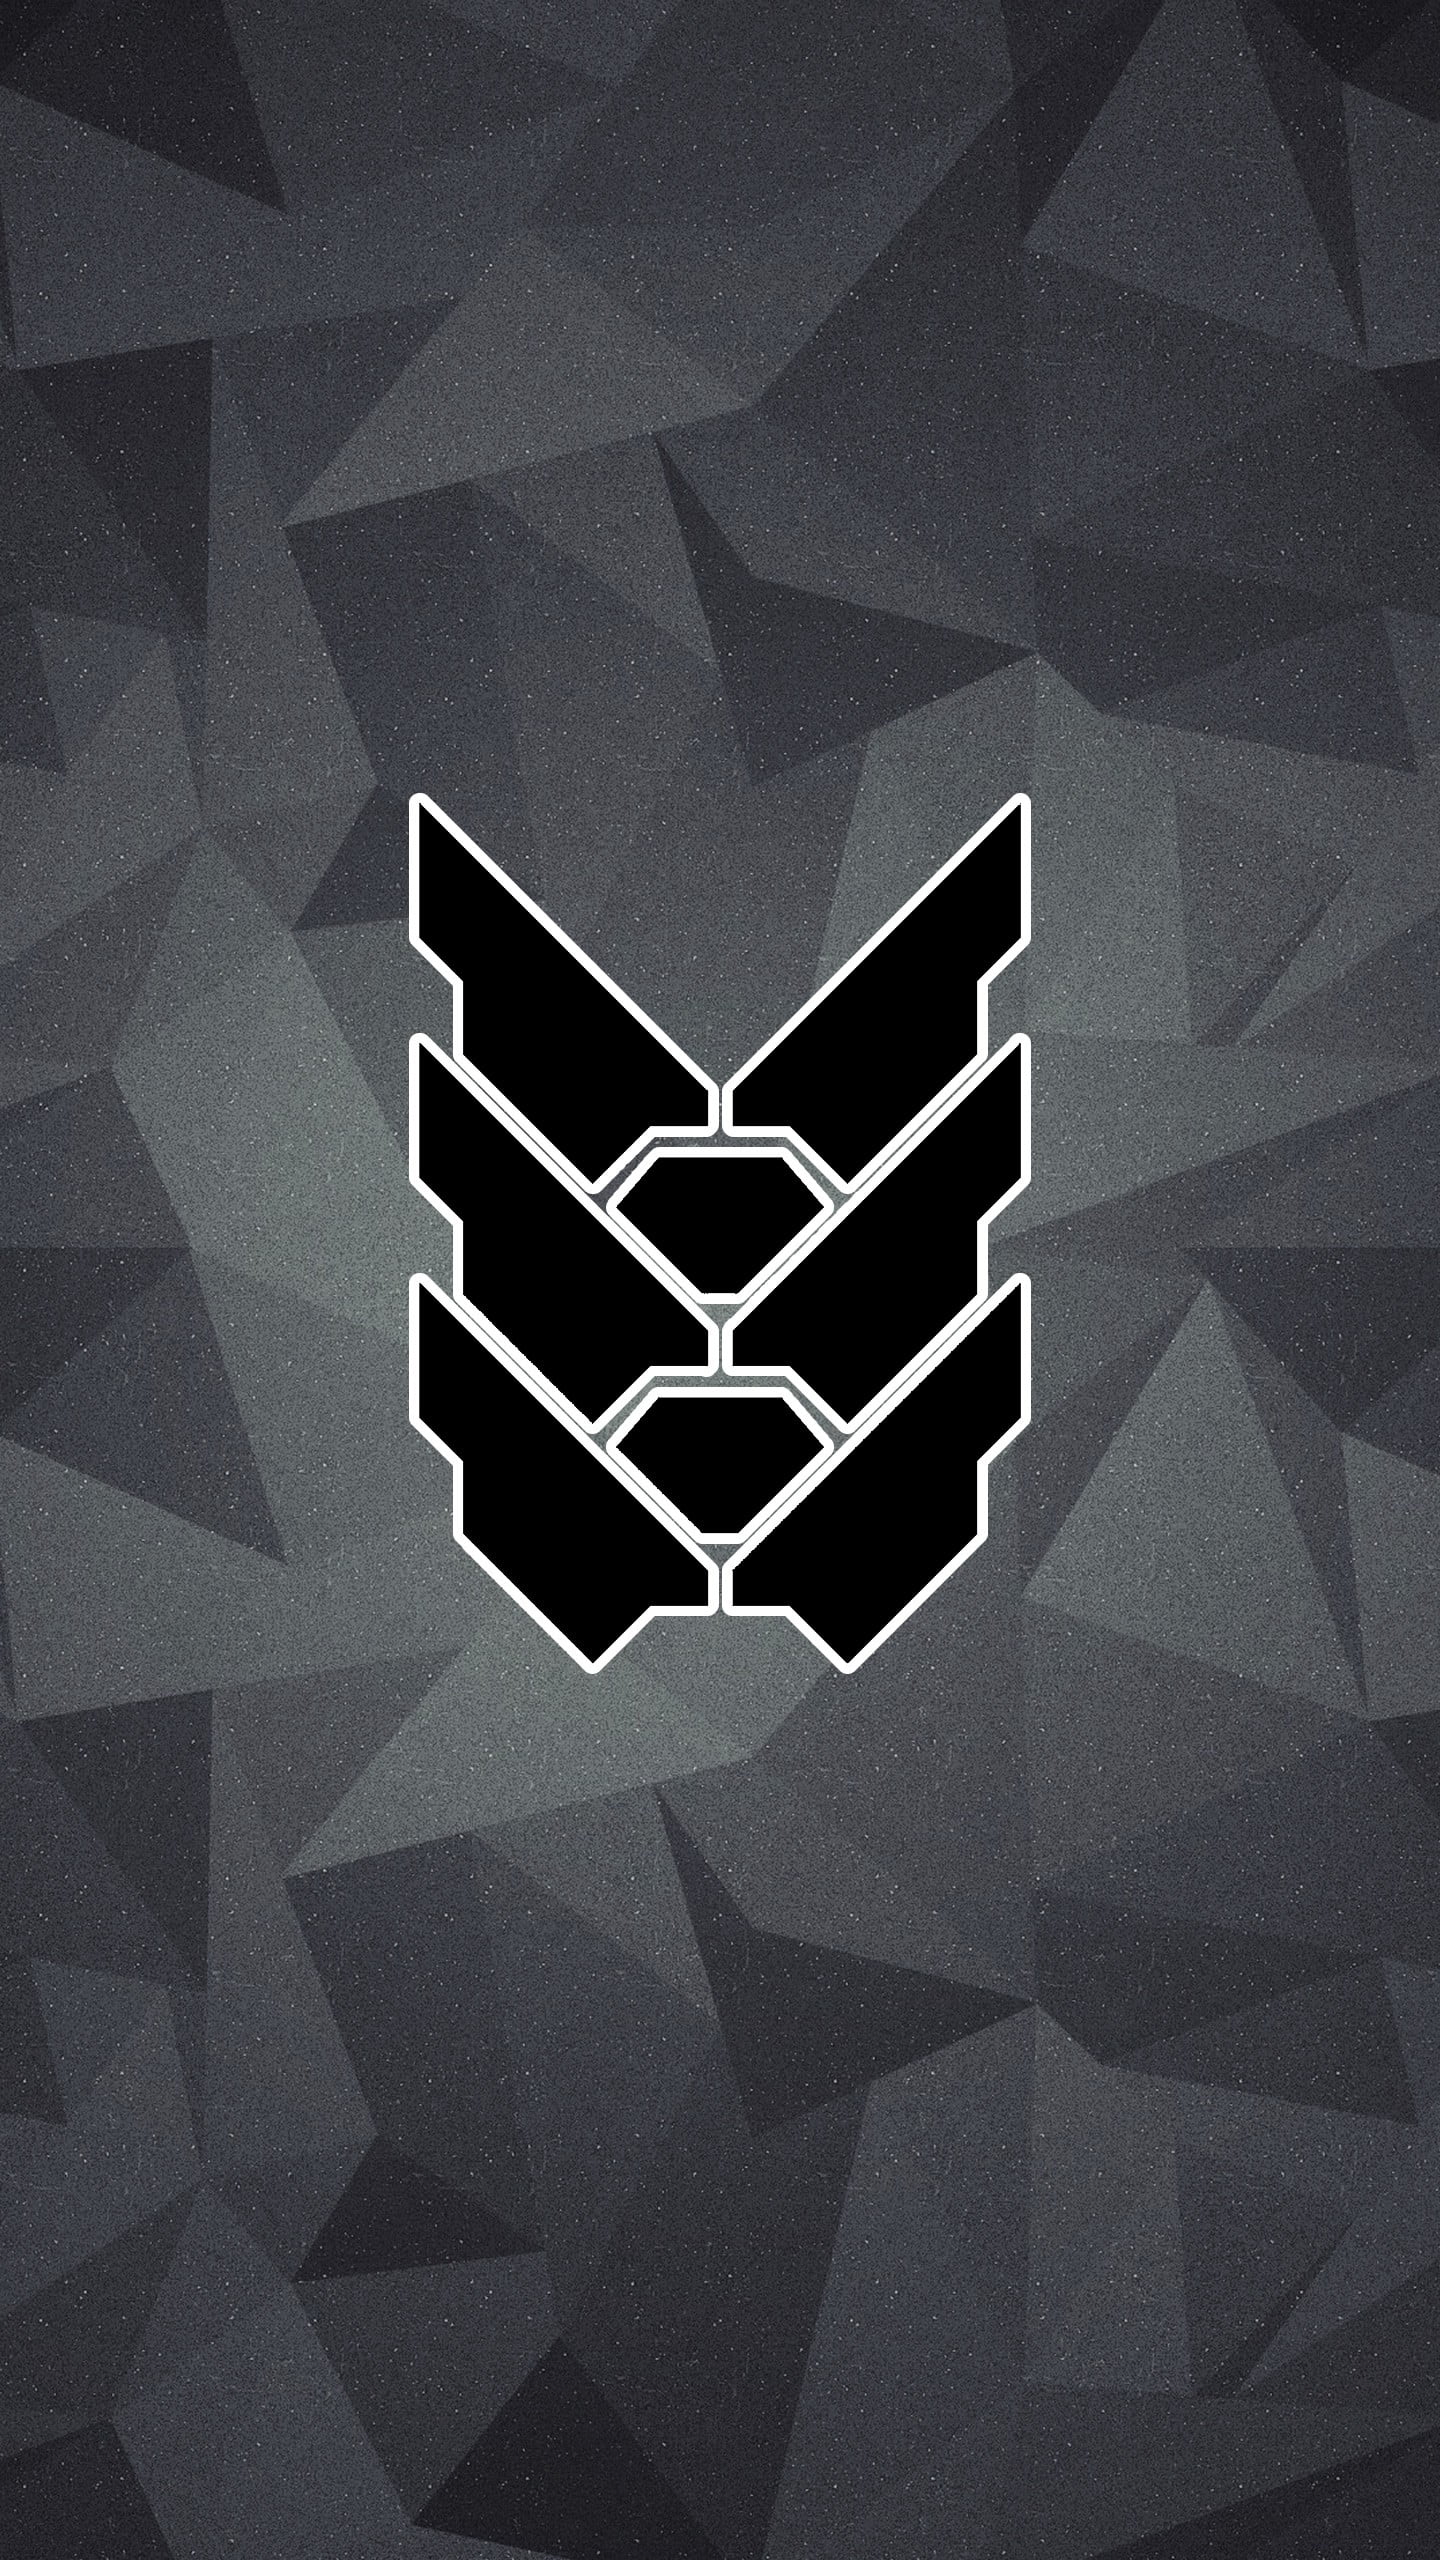 black and white logo, Halo 5: Guardians, Halo 2, pattern, shape